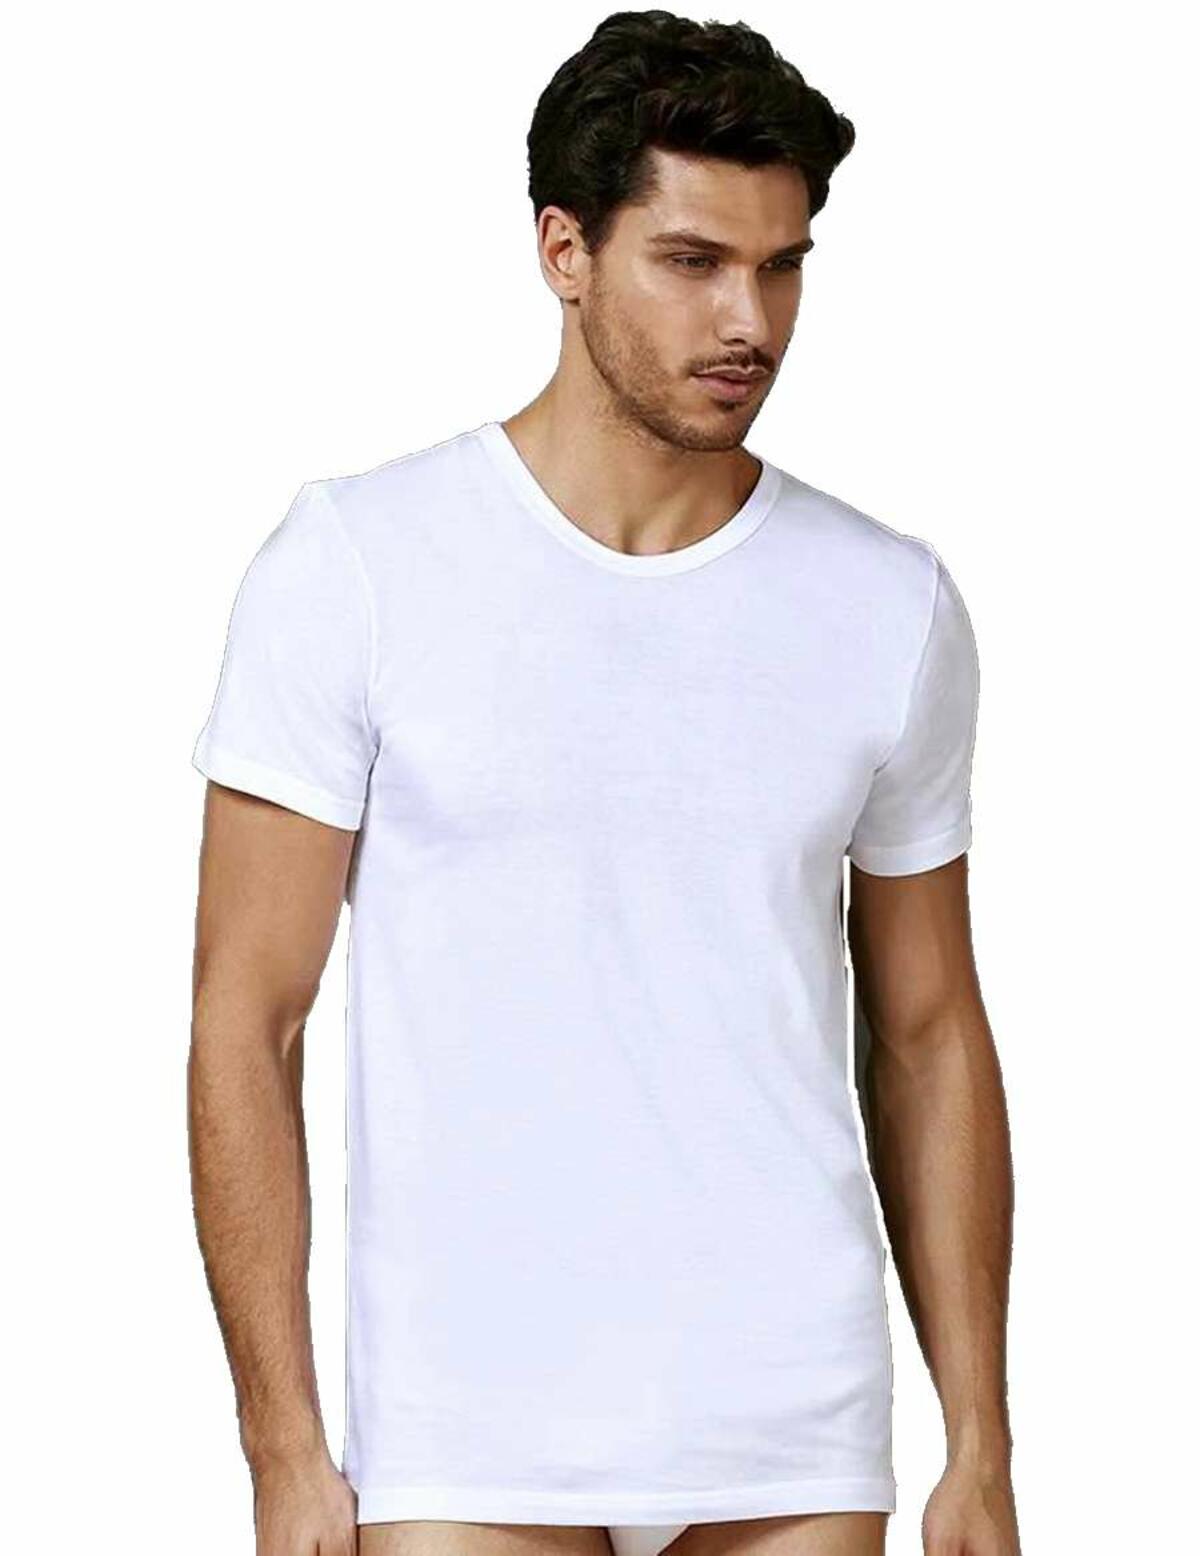 Men's T-shirt in pure cotton crew neck Oltremare 533 - underwear